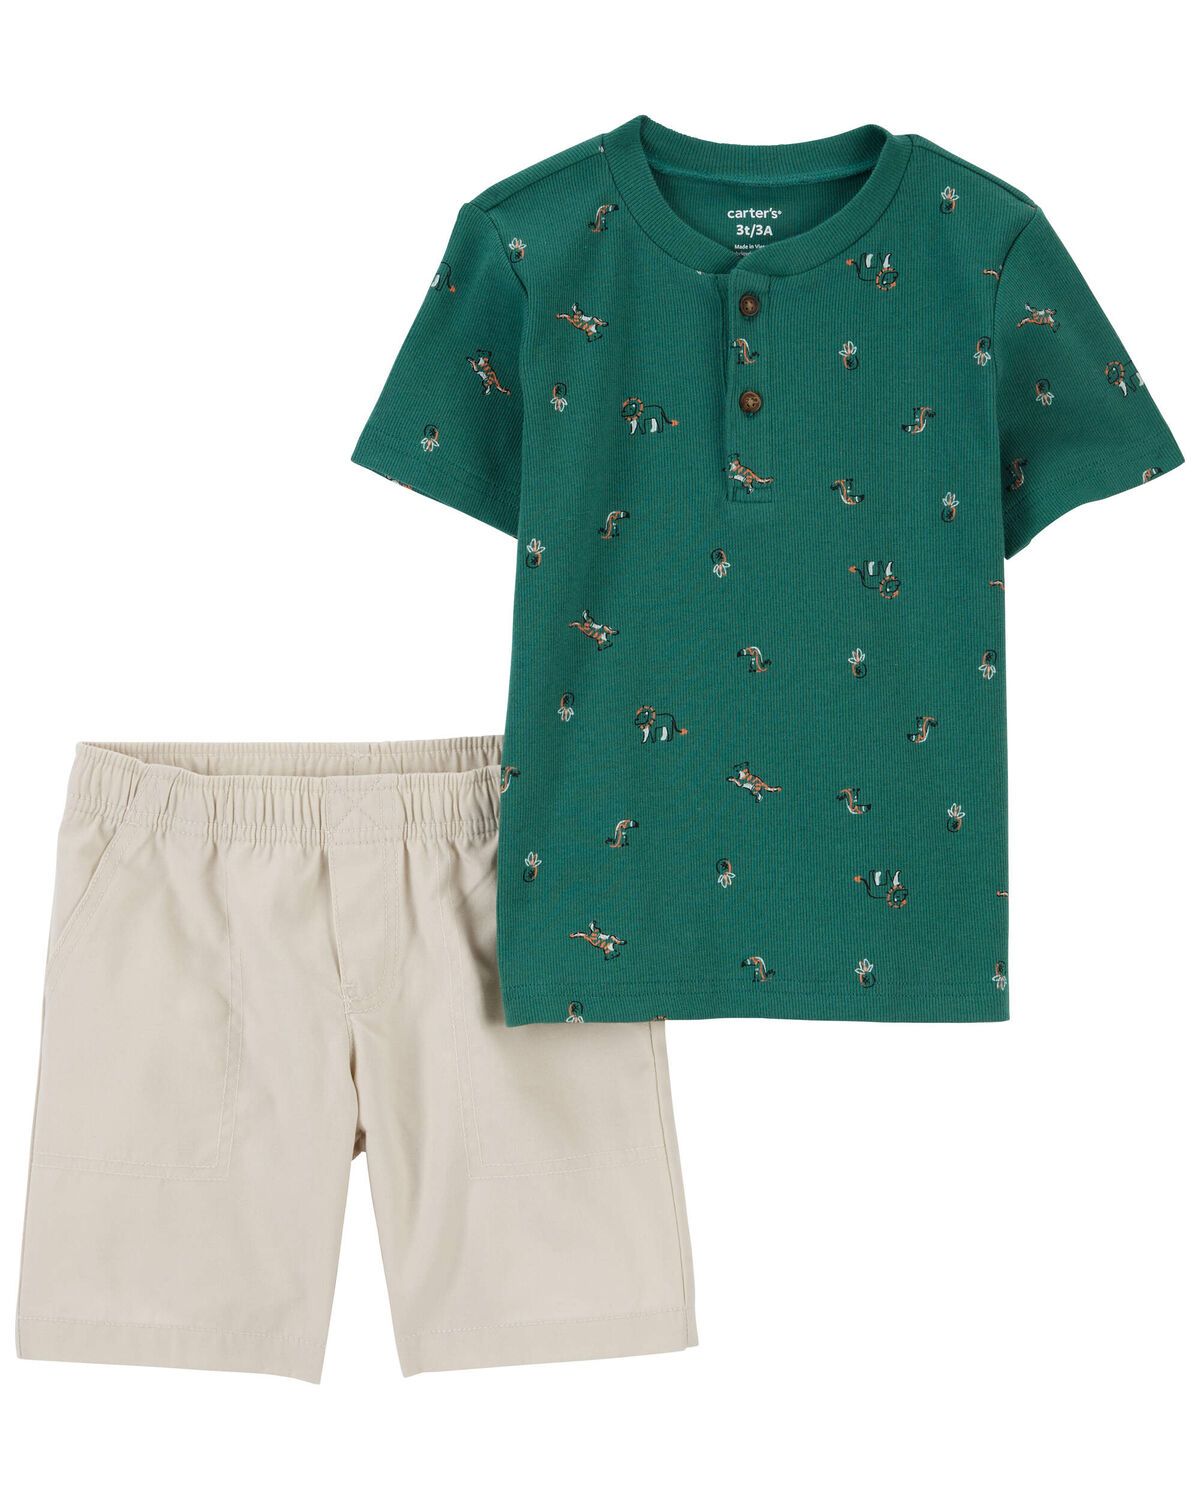 Toddler 2-Piece Shirt and Shorts Set | Carter's